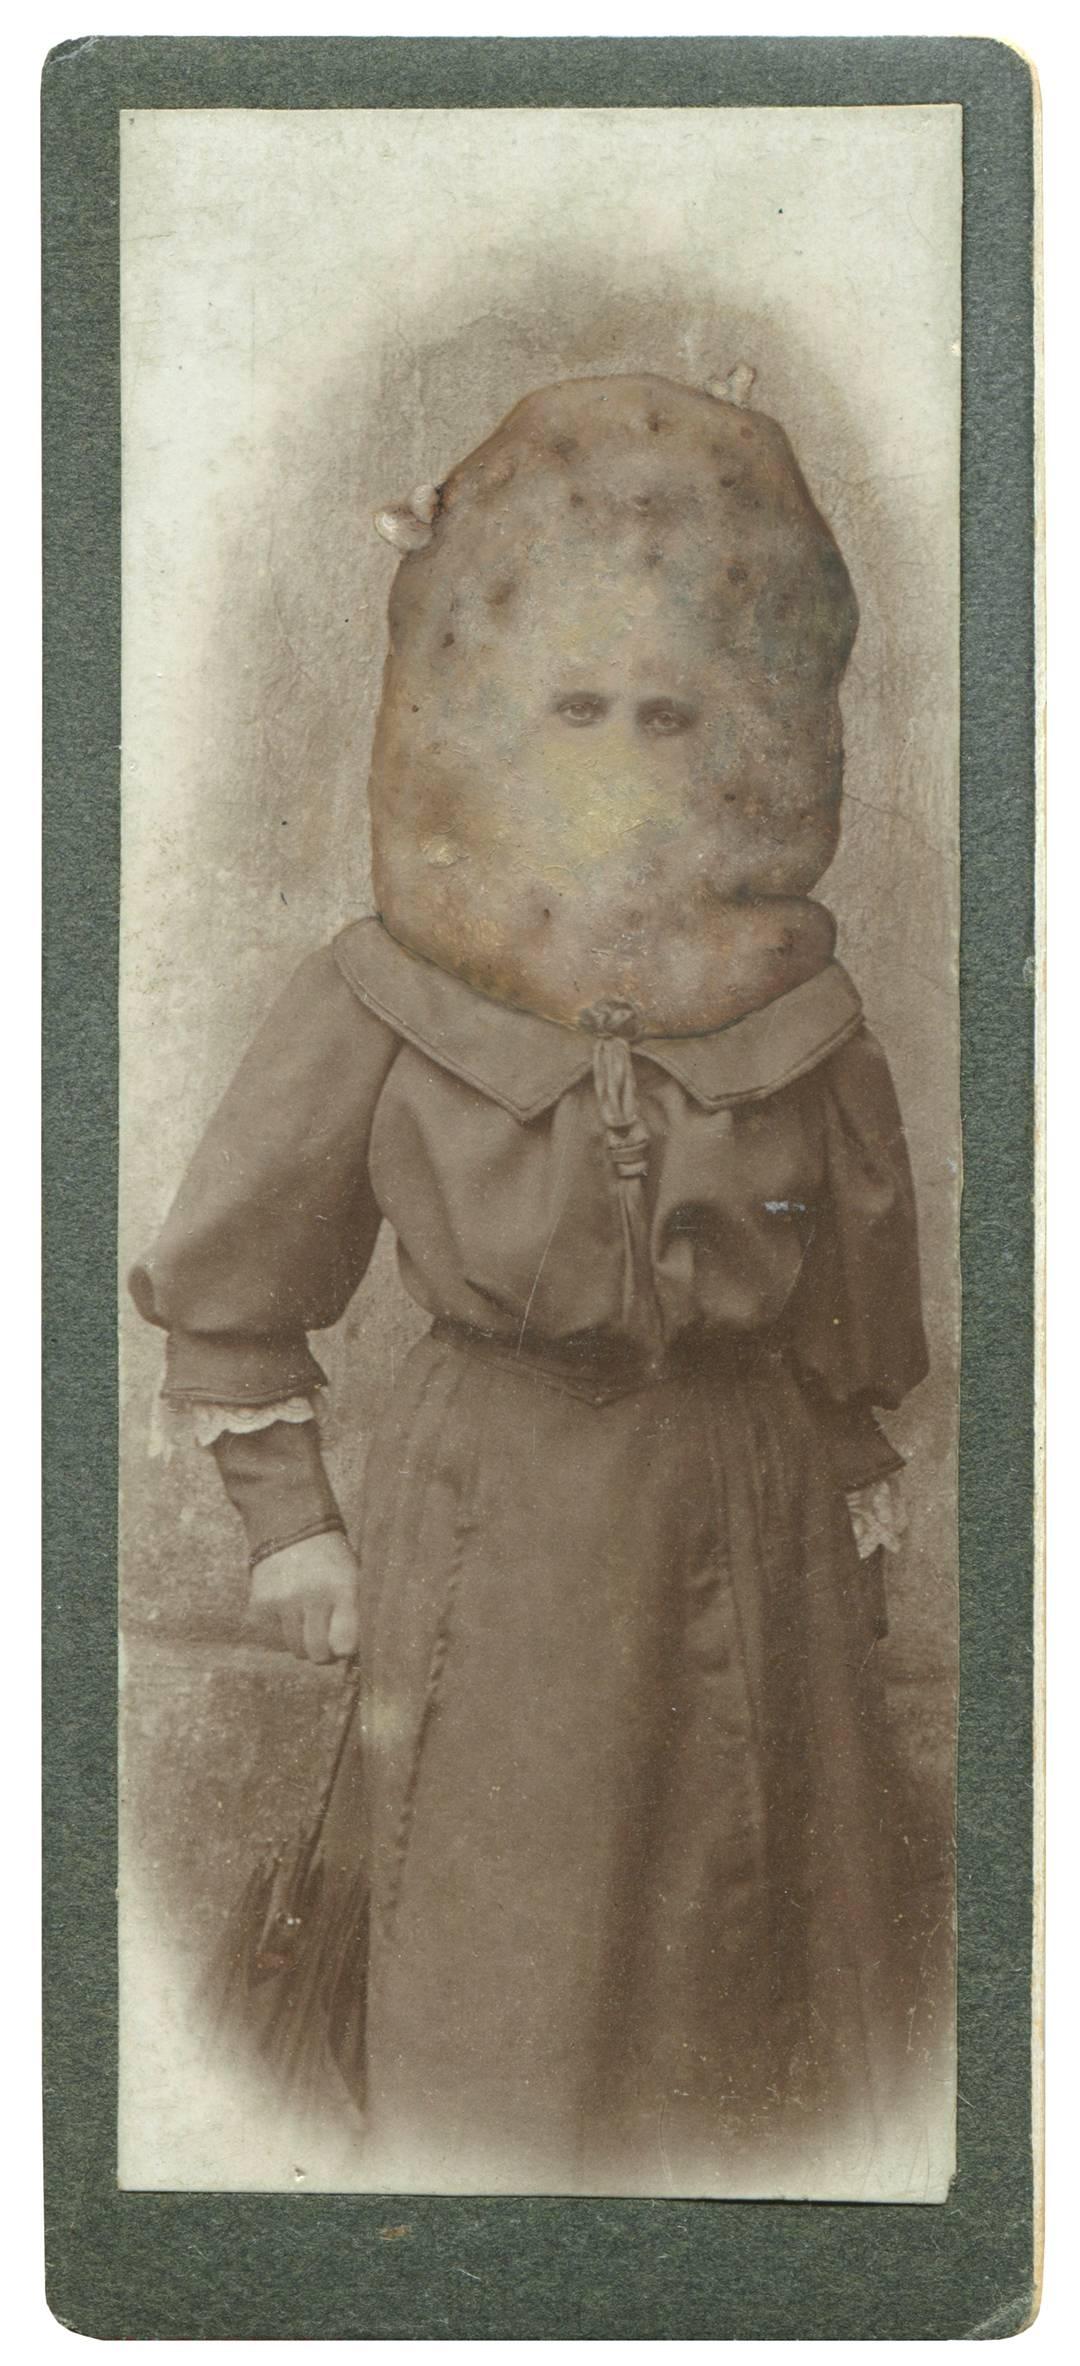 Jana Paleckova Abstract Photograph - Untitled (Large Potato Head)